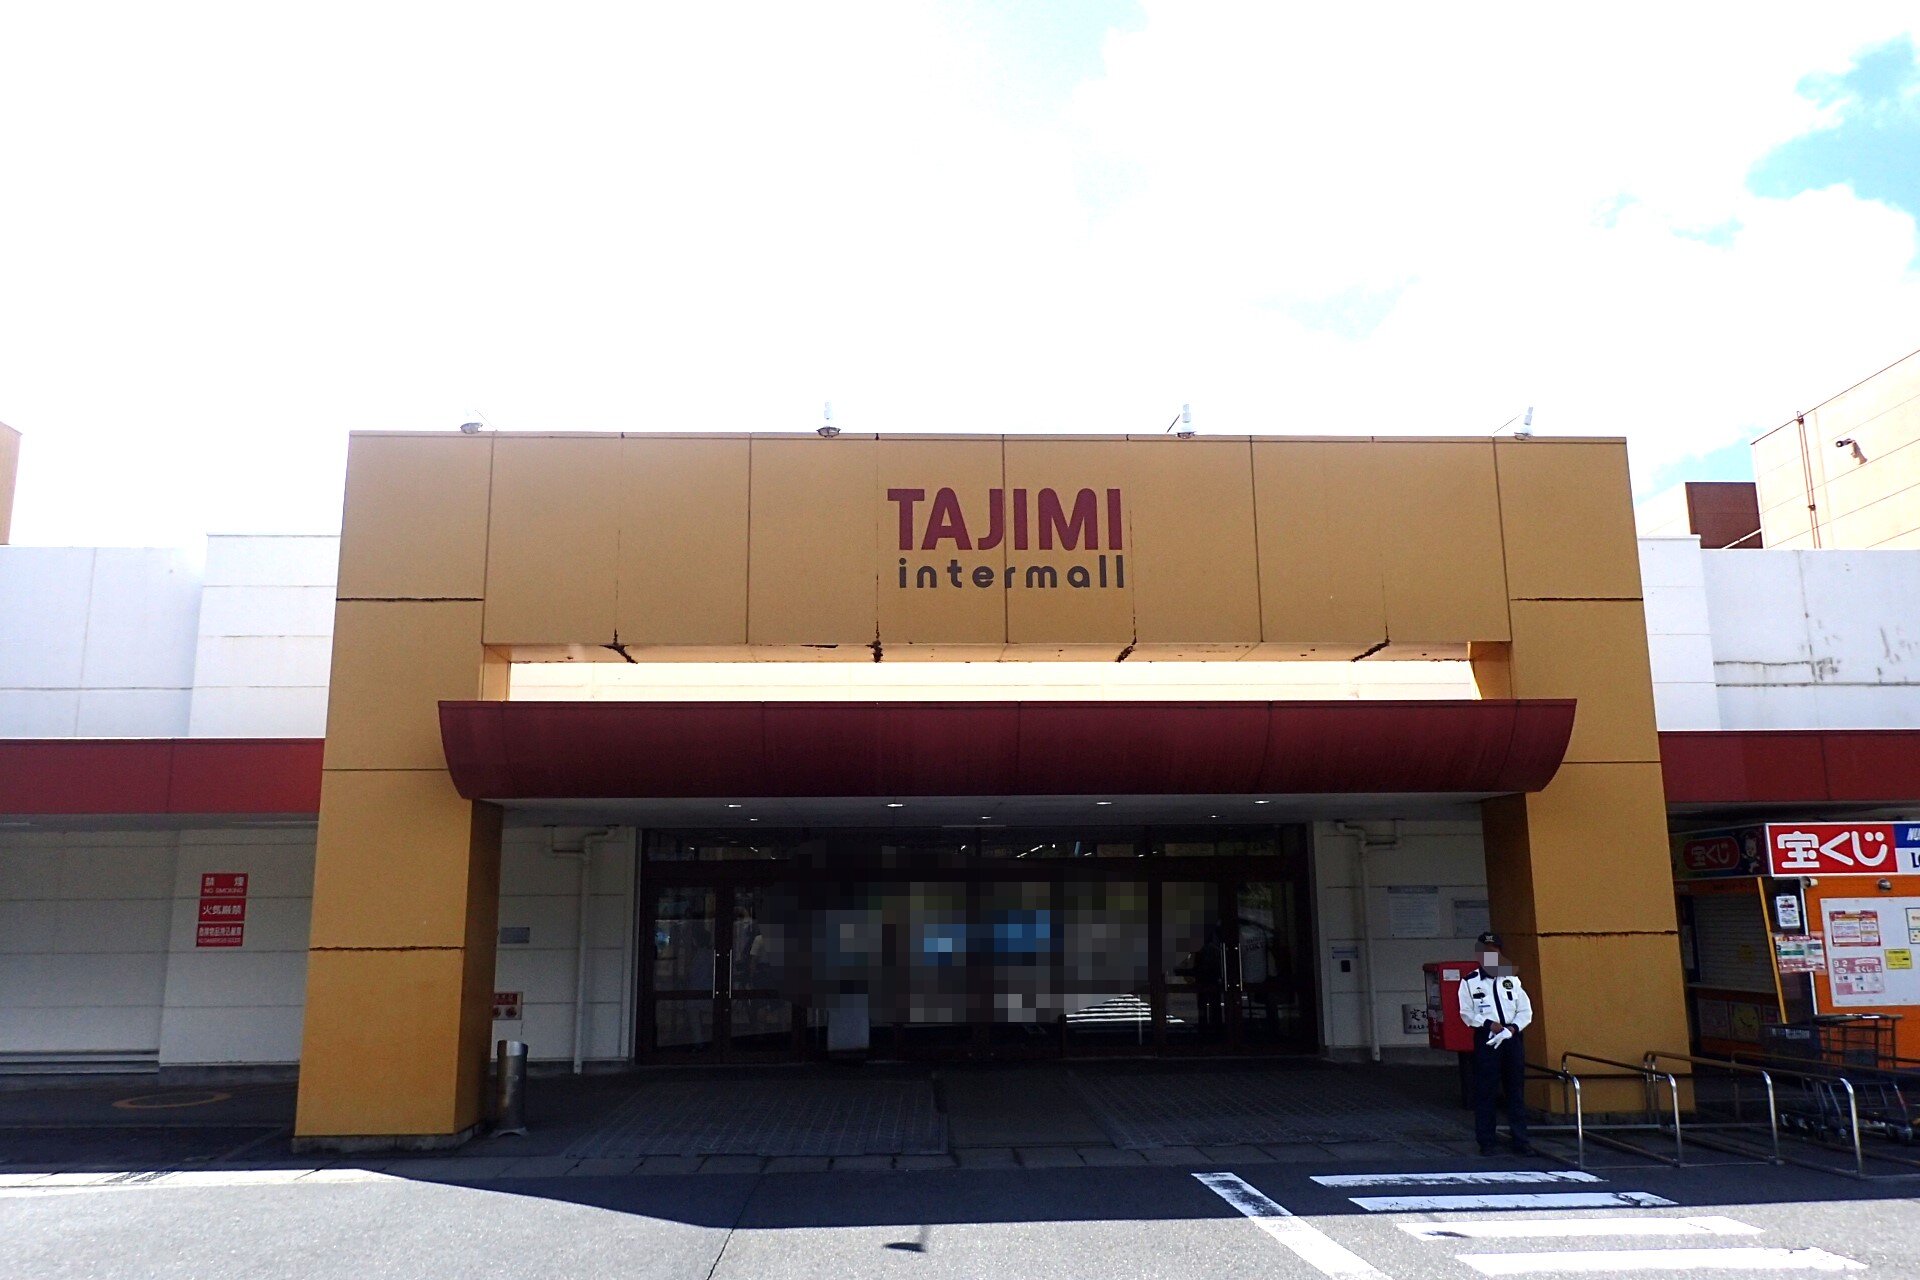 TAJIMI inter mall